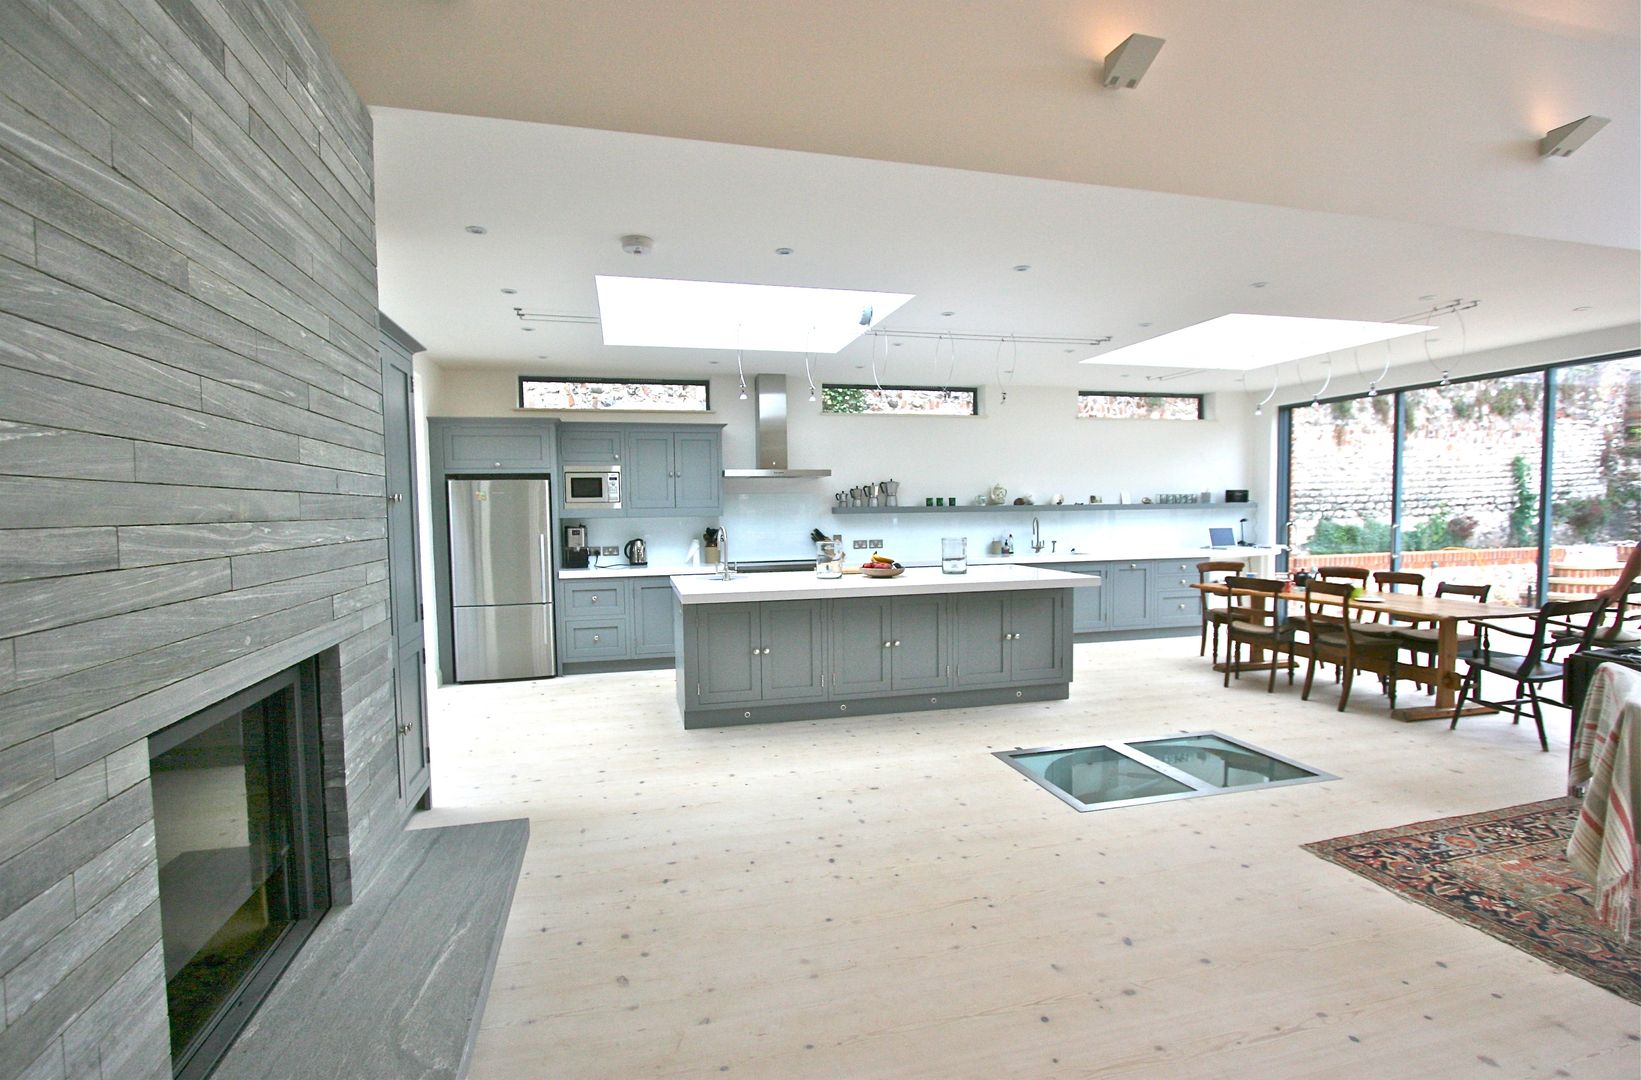 Brancaster, North Norfolk, UK Laura Gompertz Interiors Ltd مطبخ grey kitchen,kitchen island,island,contemporary kitchen,modern kitchen,large kitchen,grey and white,white worktop